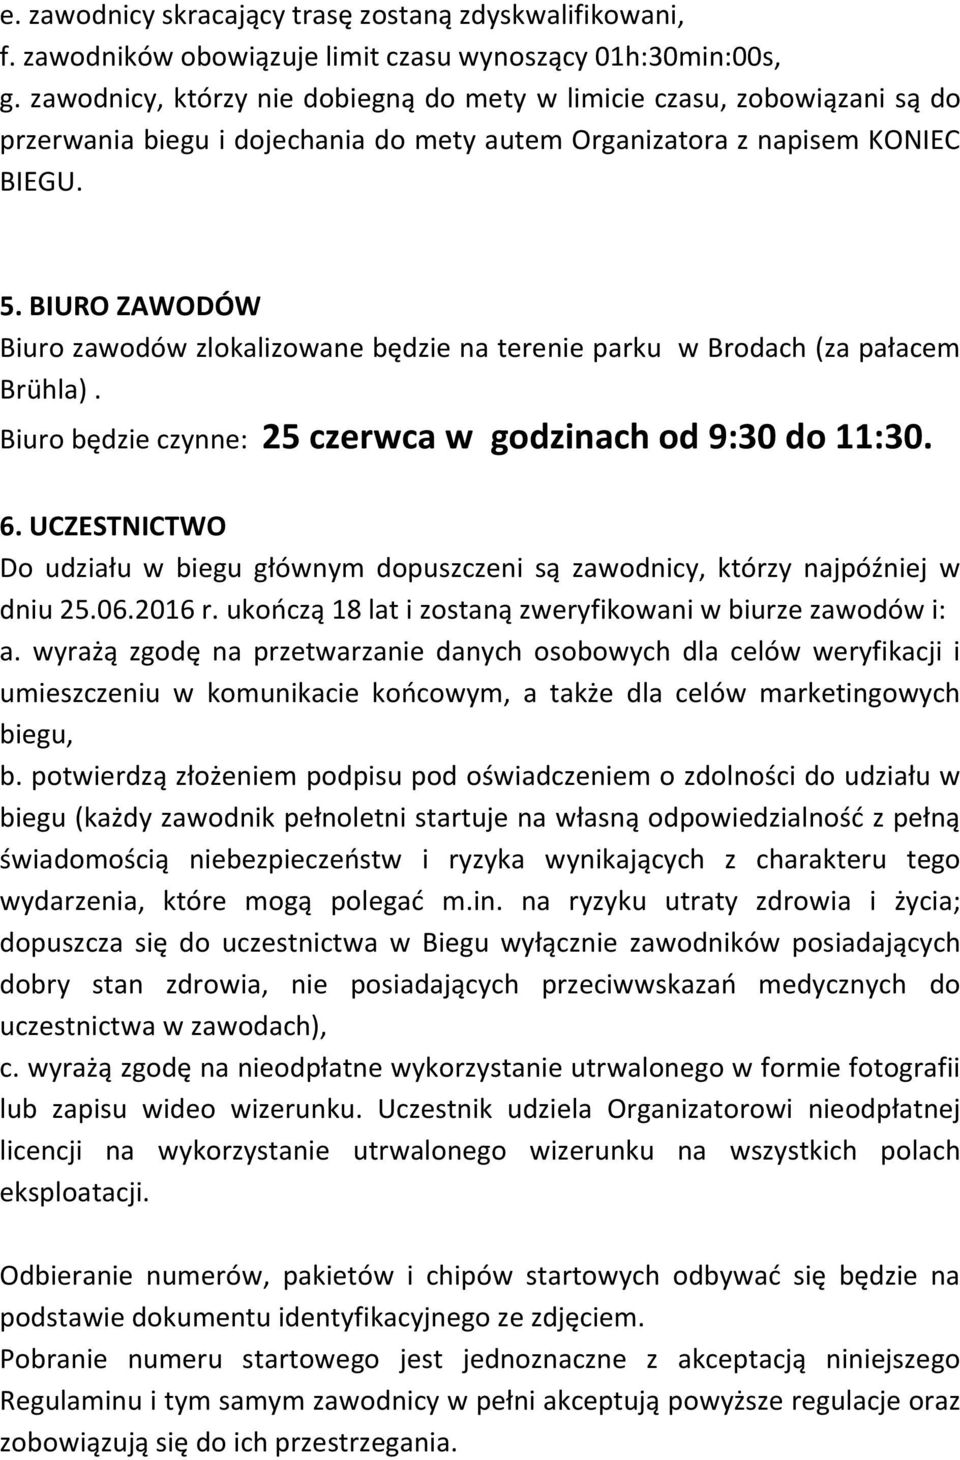 BIURO ZAWODÓW Biuro zawodów zlokalizowane będzie na terenie parku w Brodach (za pałacem Brühla). Biuro będzie czynne: 25 czerwca w godzinach od 9:30 do 11:30. 6.